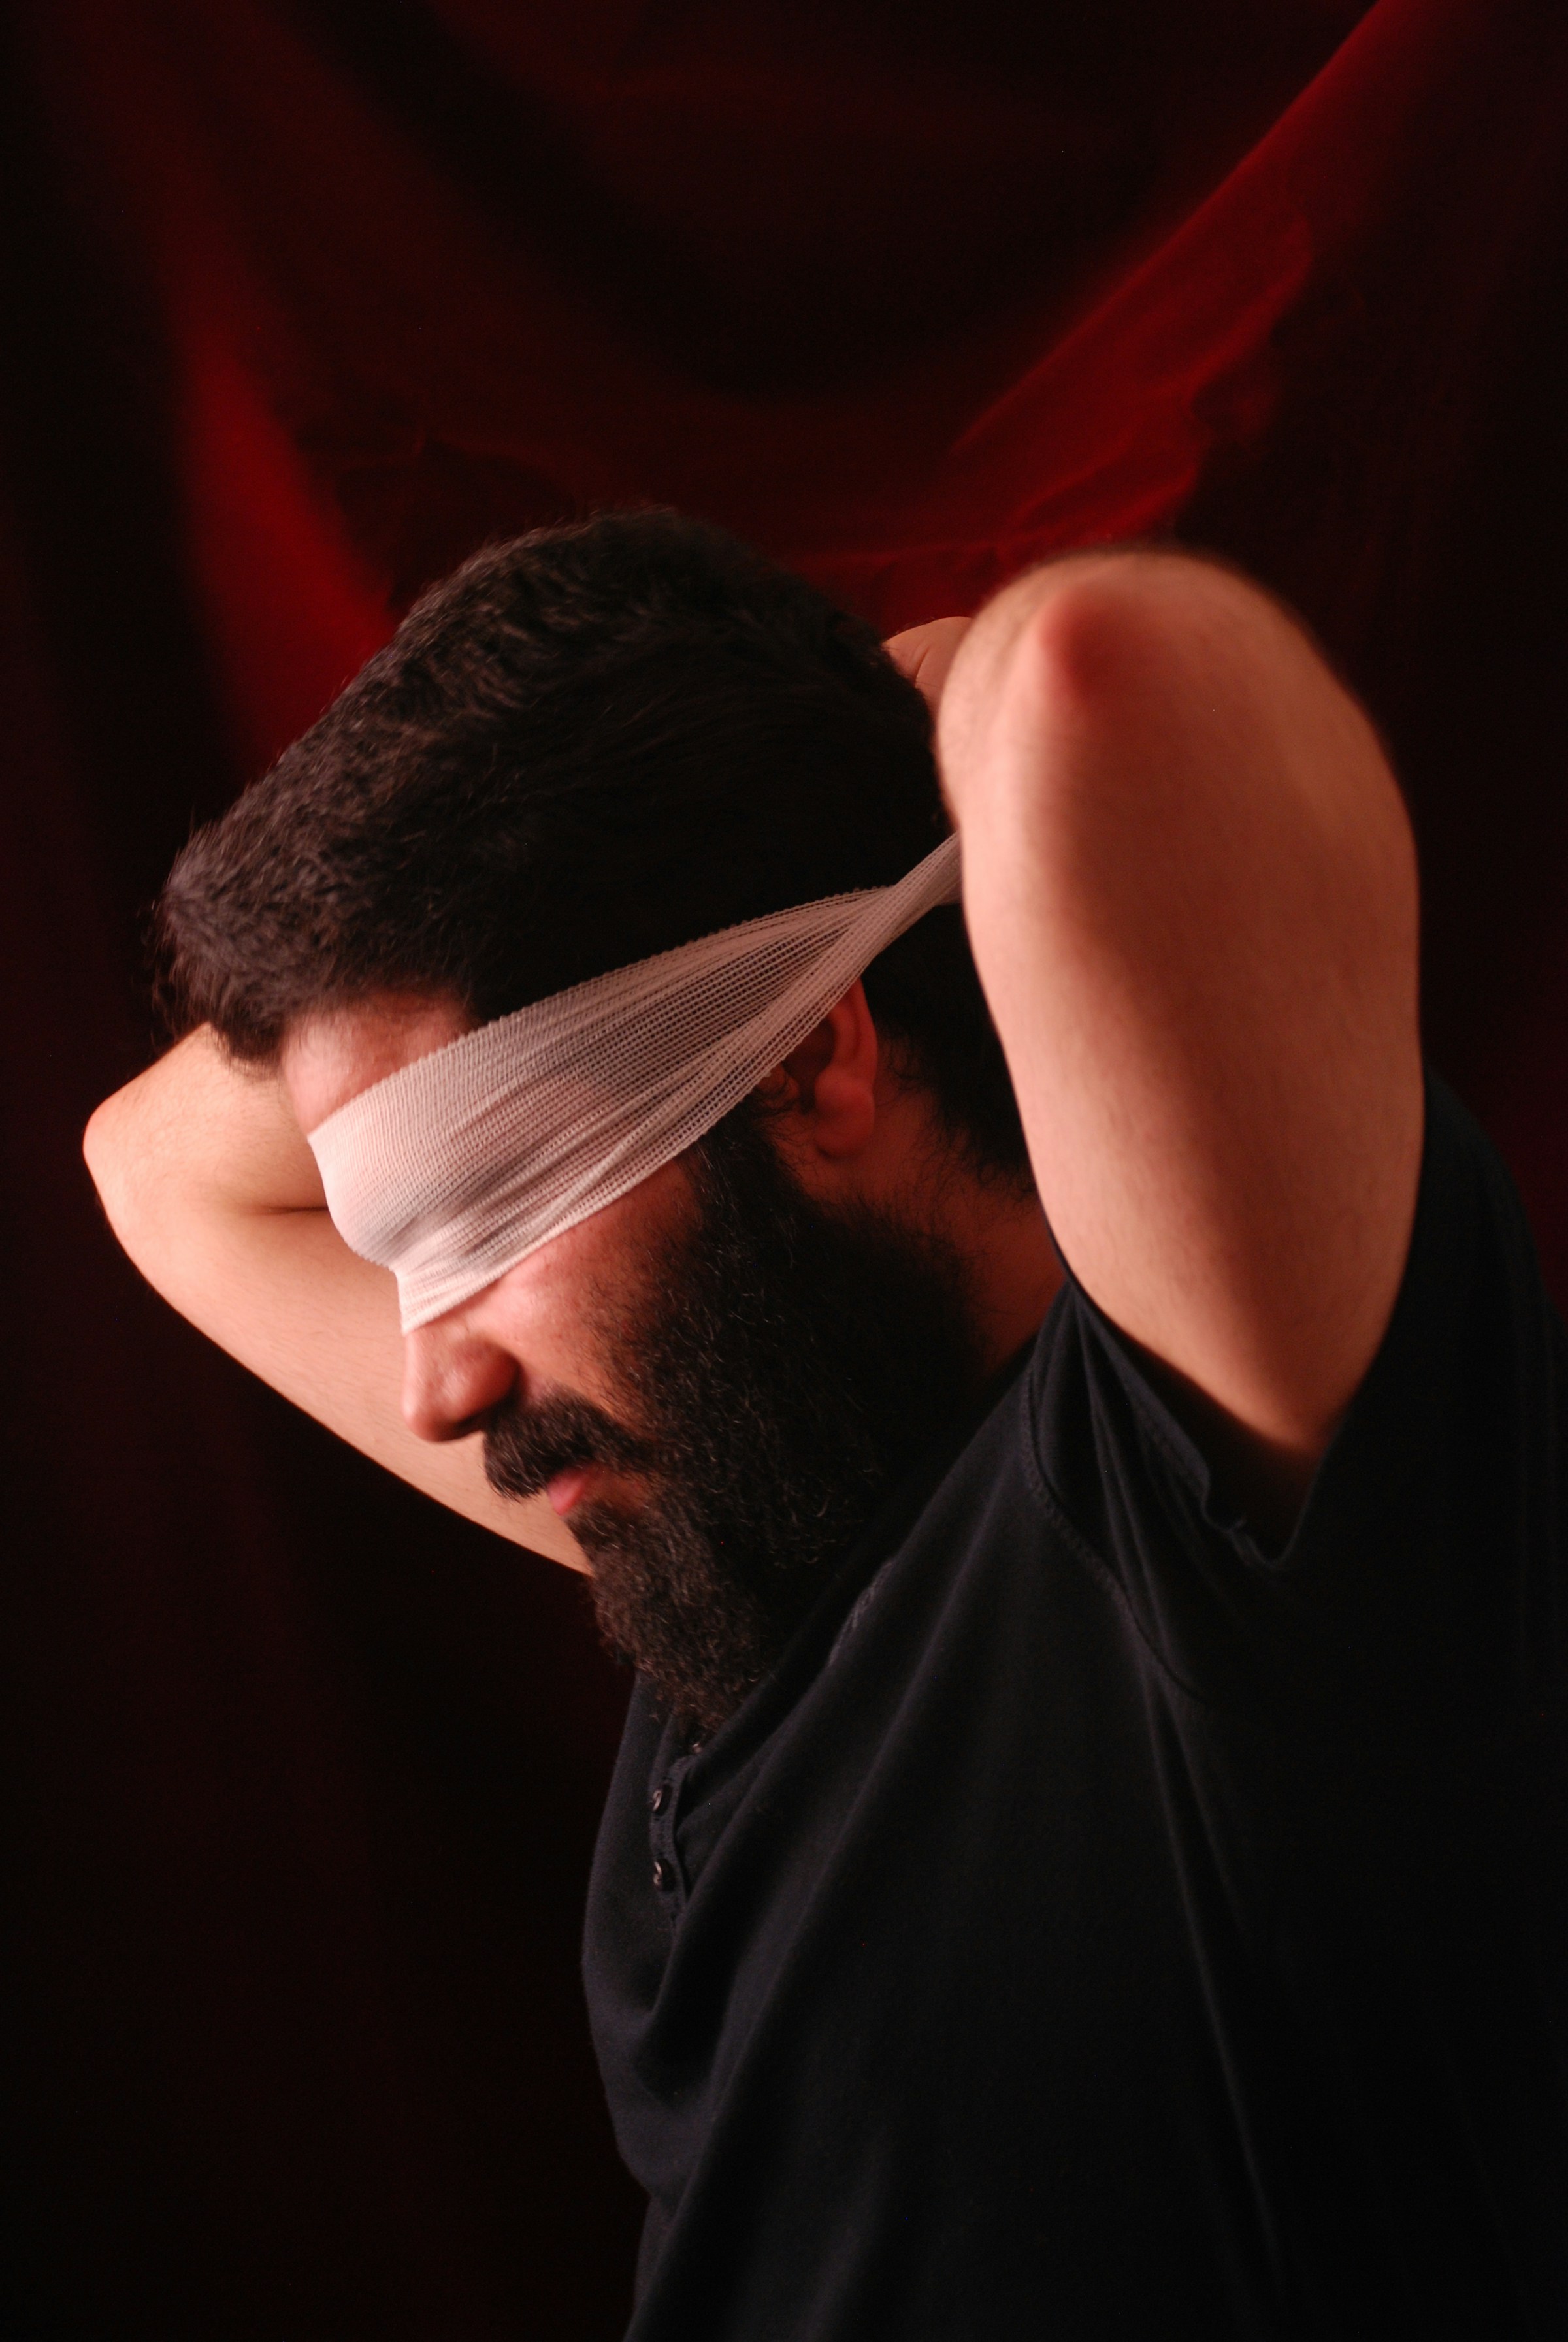 Mann mit einer Augenbinde | Quelle: Unsplash